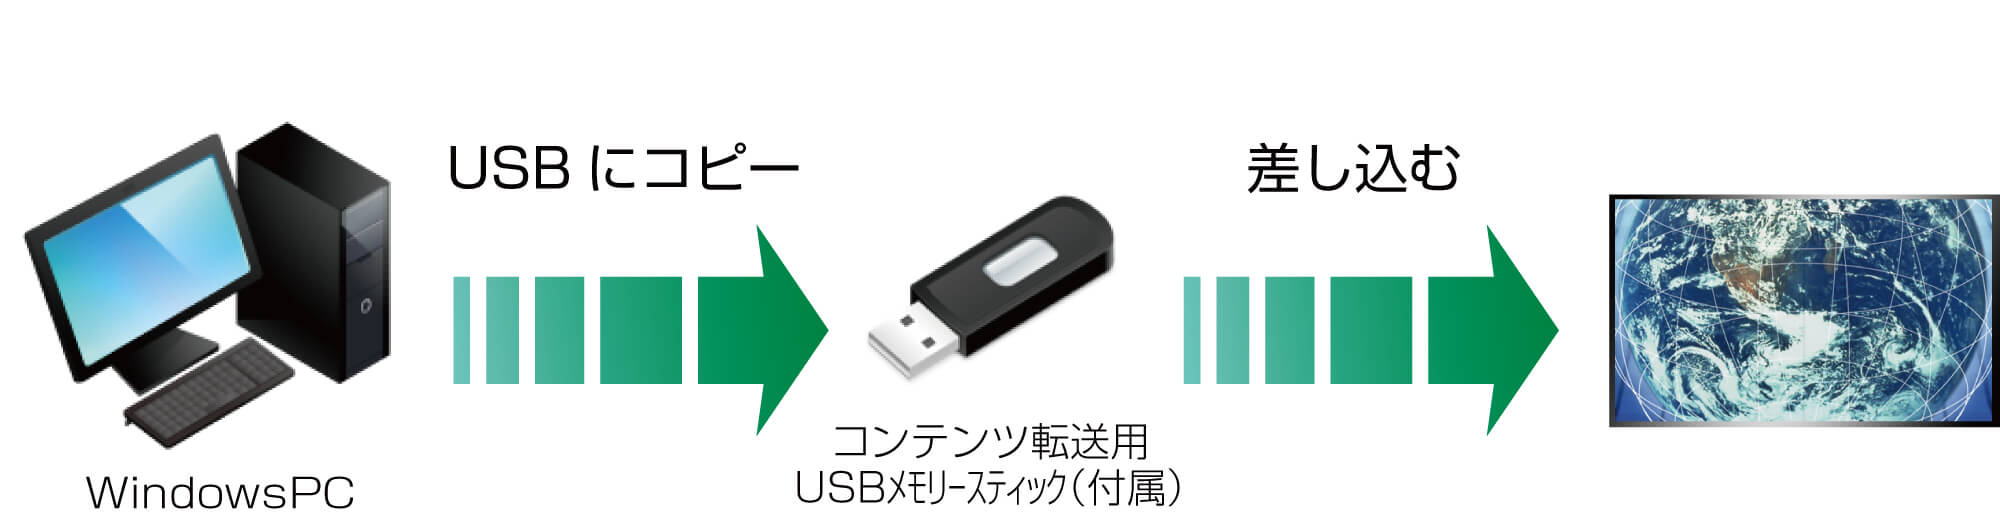 デジタルサイネージ　USBシステムではUSBメモリに放映データを入れてサイネージに挿すだけで簡単に放映内容の変更が出来ます。